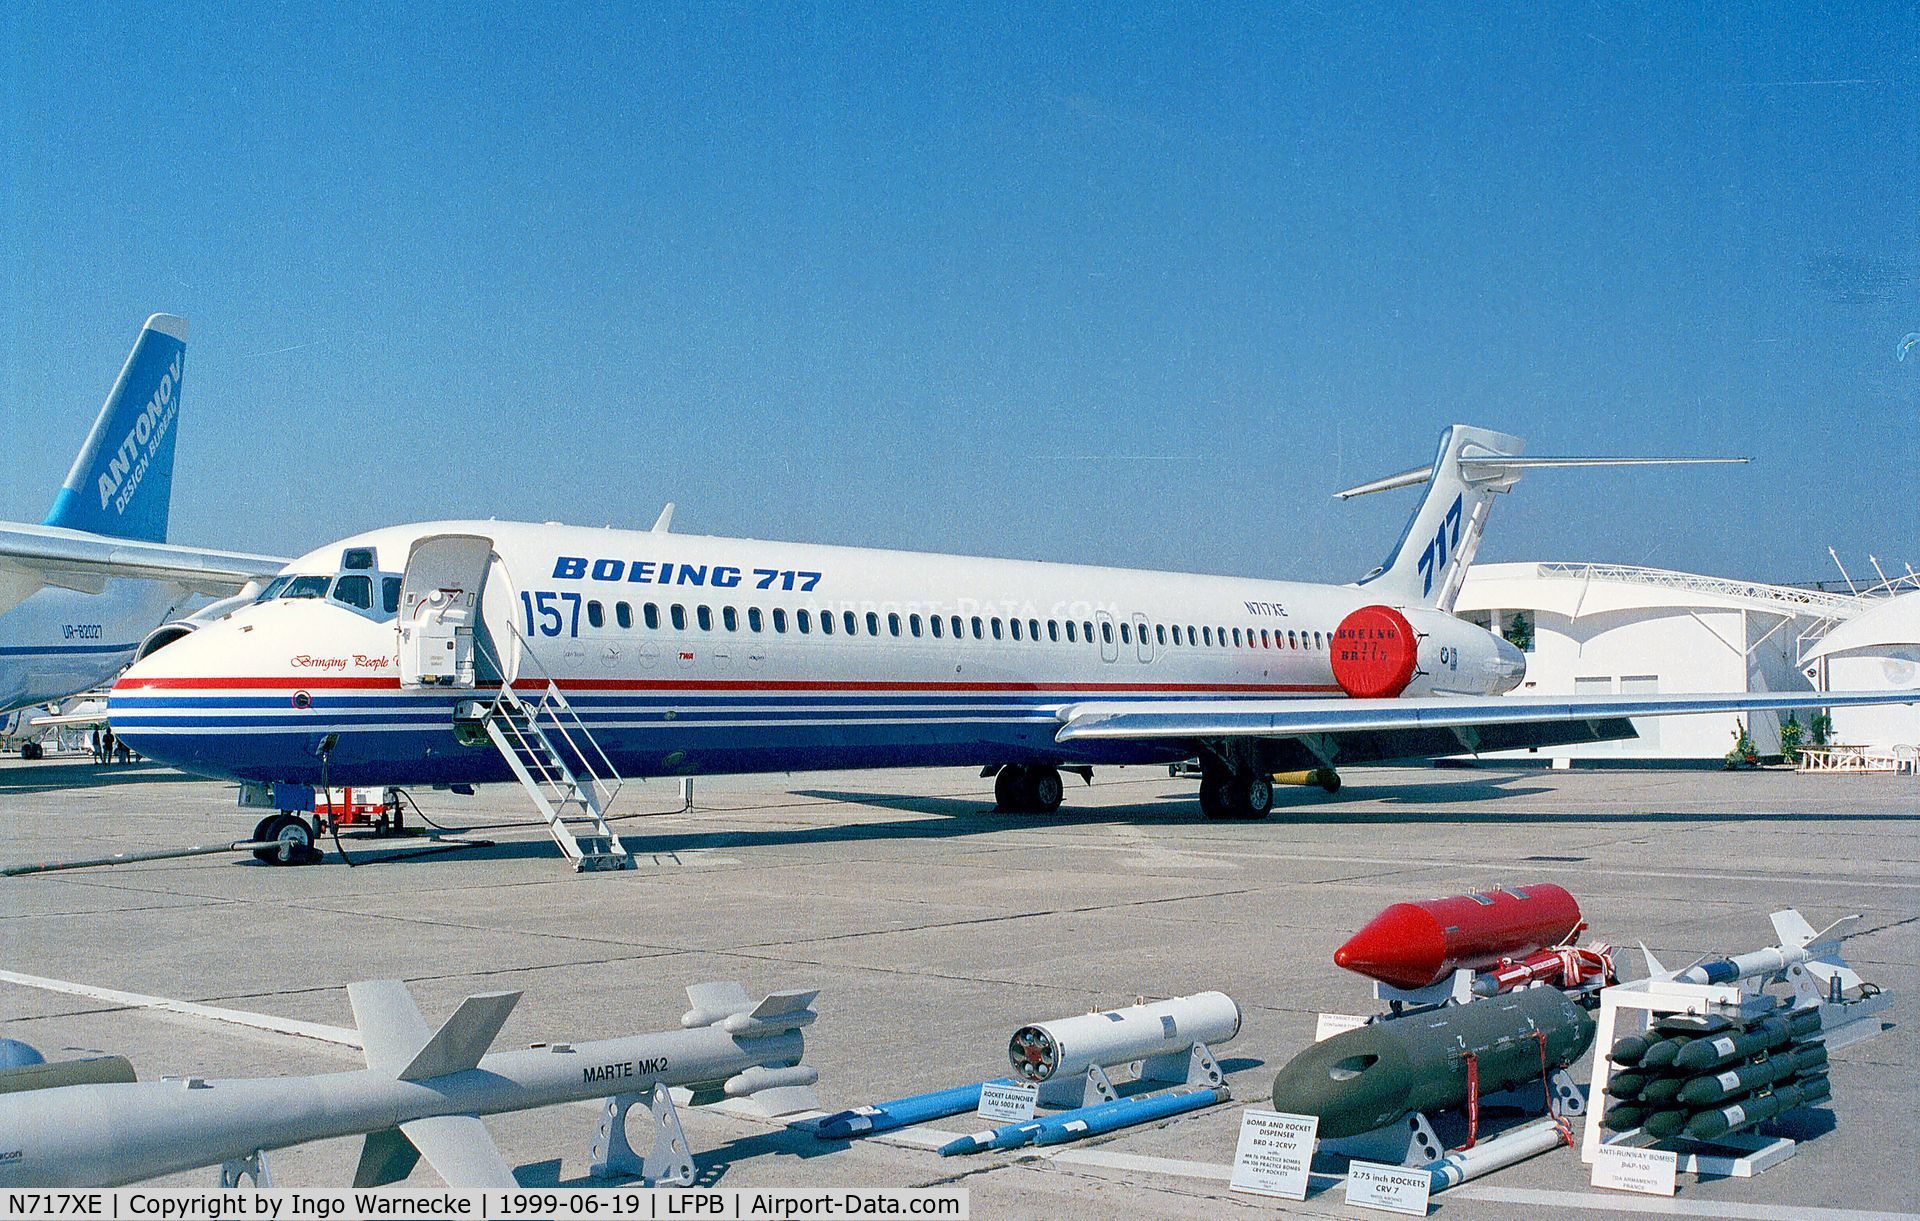 N717XE, 1999 Boeing 717-2BD C/N 55004, Boeing 717-200 at the Aerosalon 1999, Paris